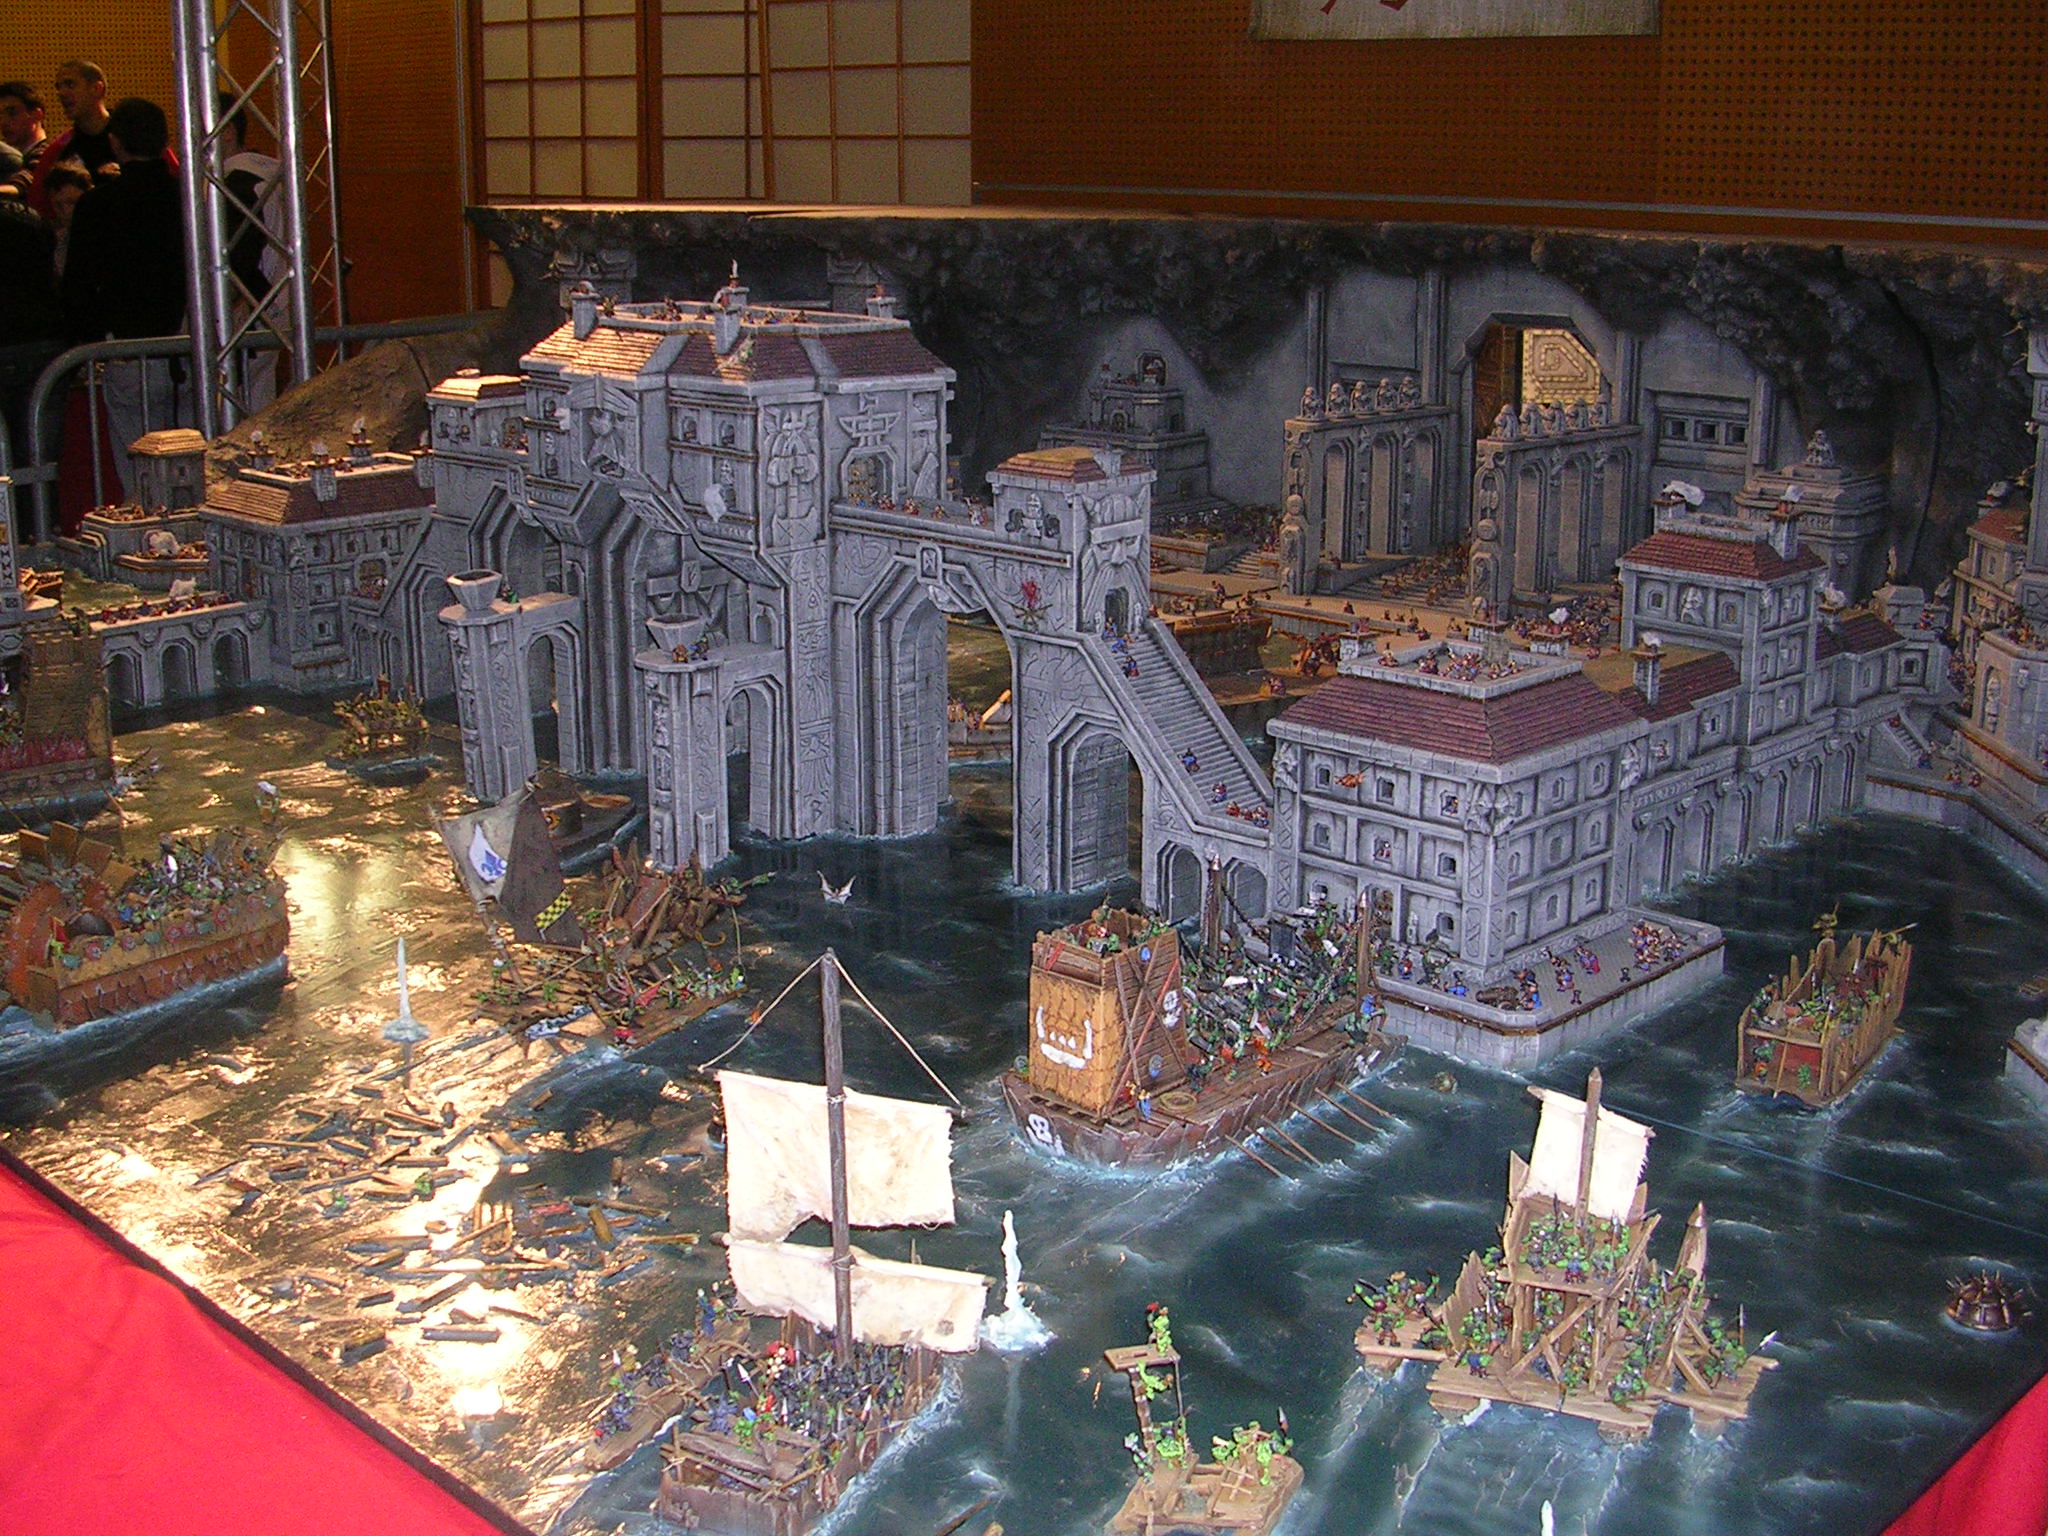 Concours de peinture de Games Workshop au Japon en 2009